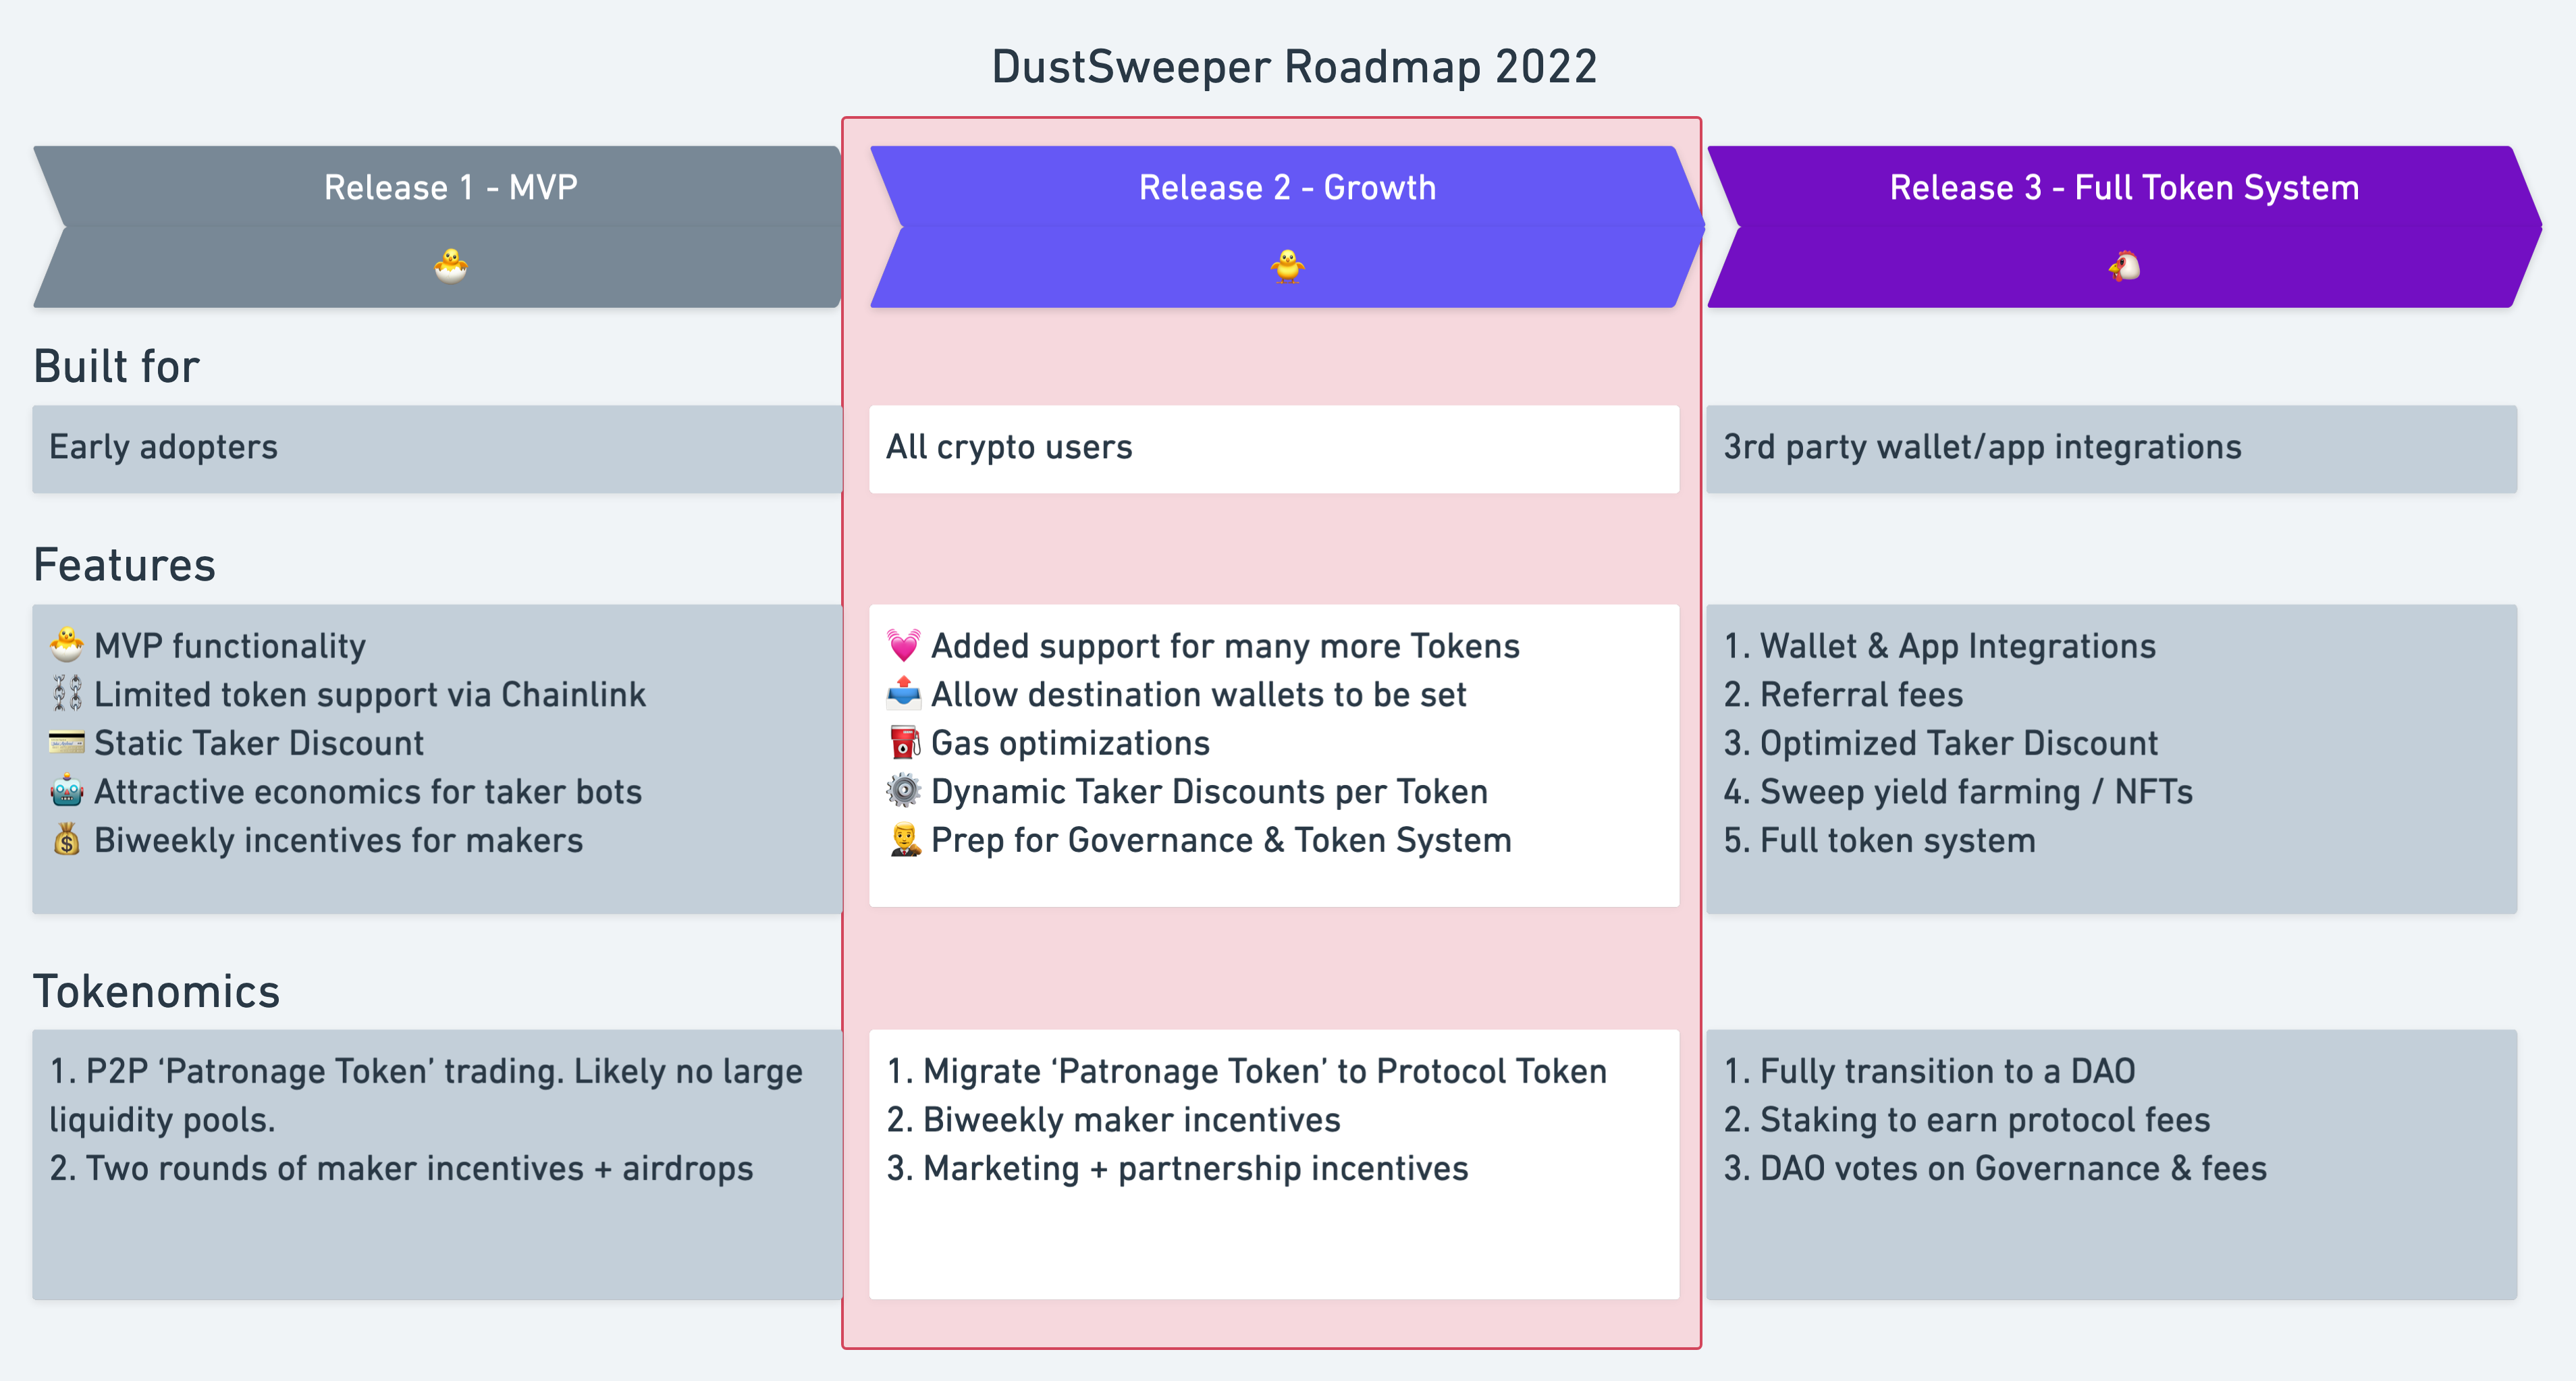 DustSweeper Roadmap 2022